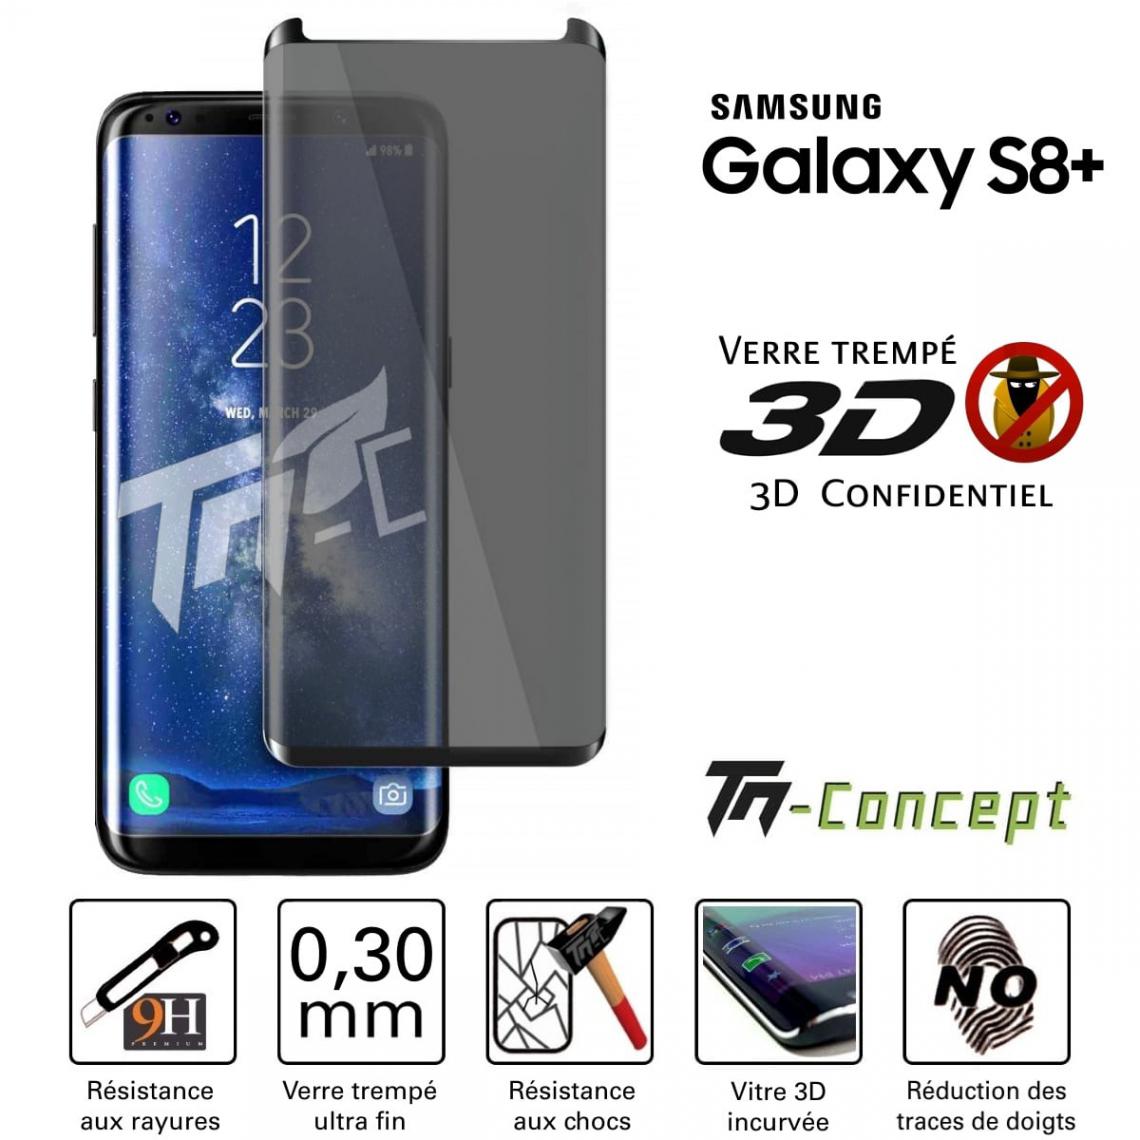 Tm Concept - Verre trempé 3D teinté - Samsung Galaxy S8 Plus - Noir - TM Concept® - Protection écran smartphone